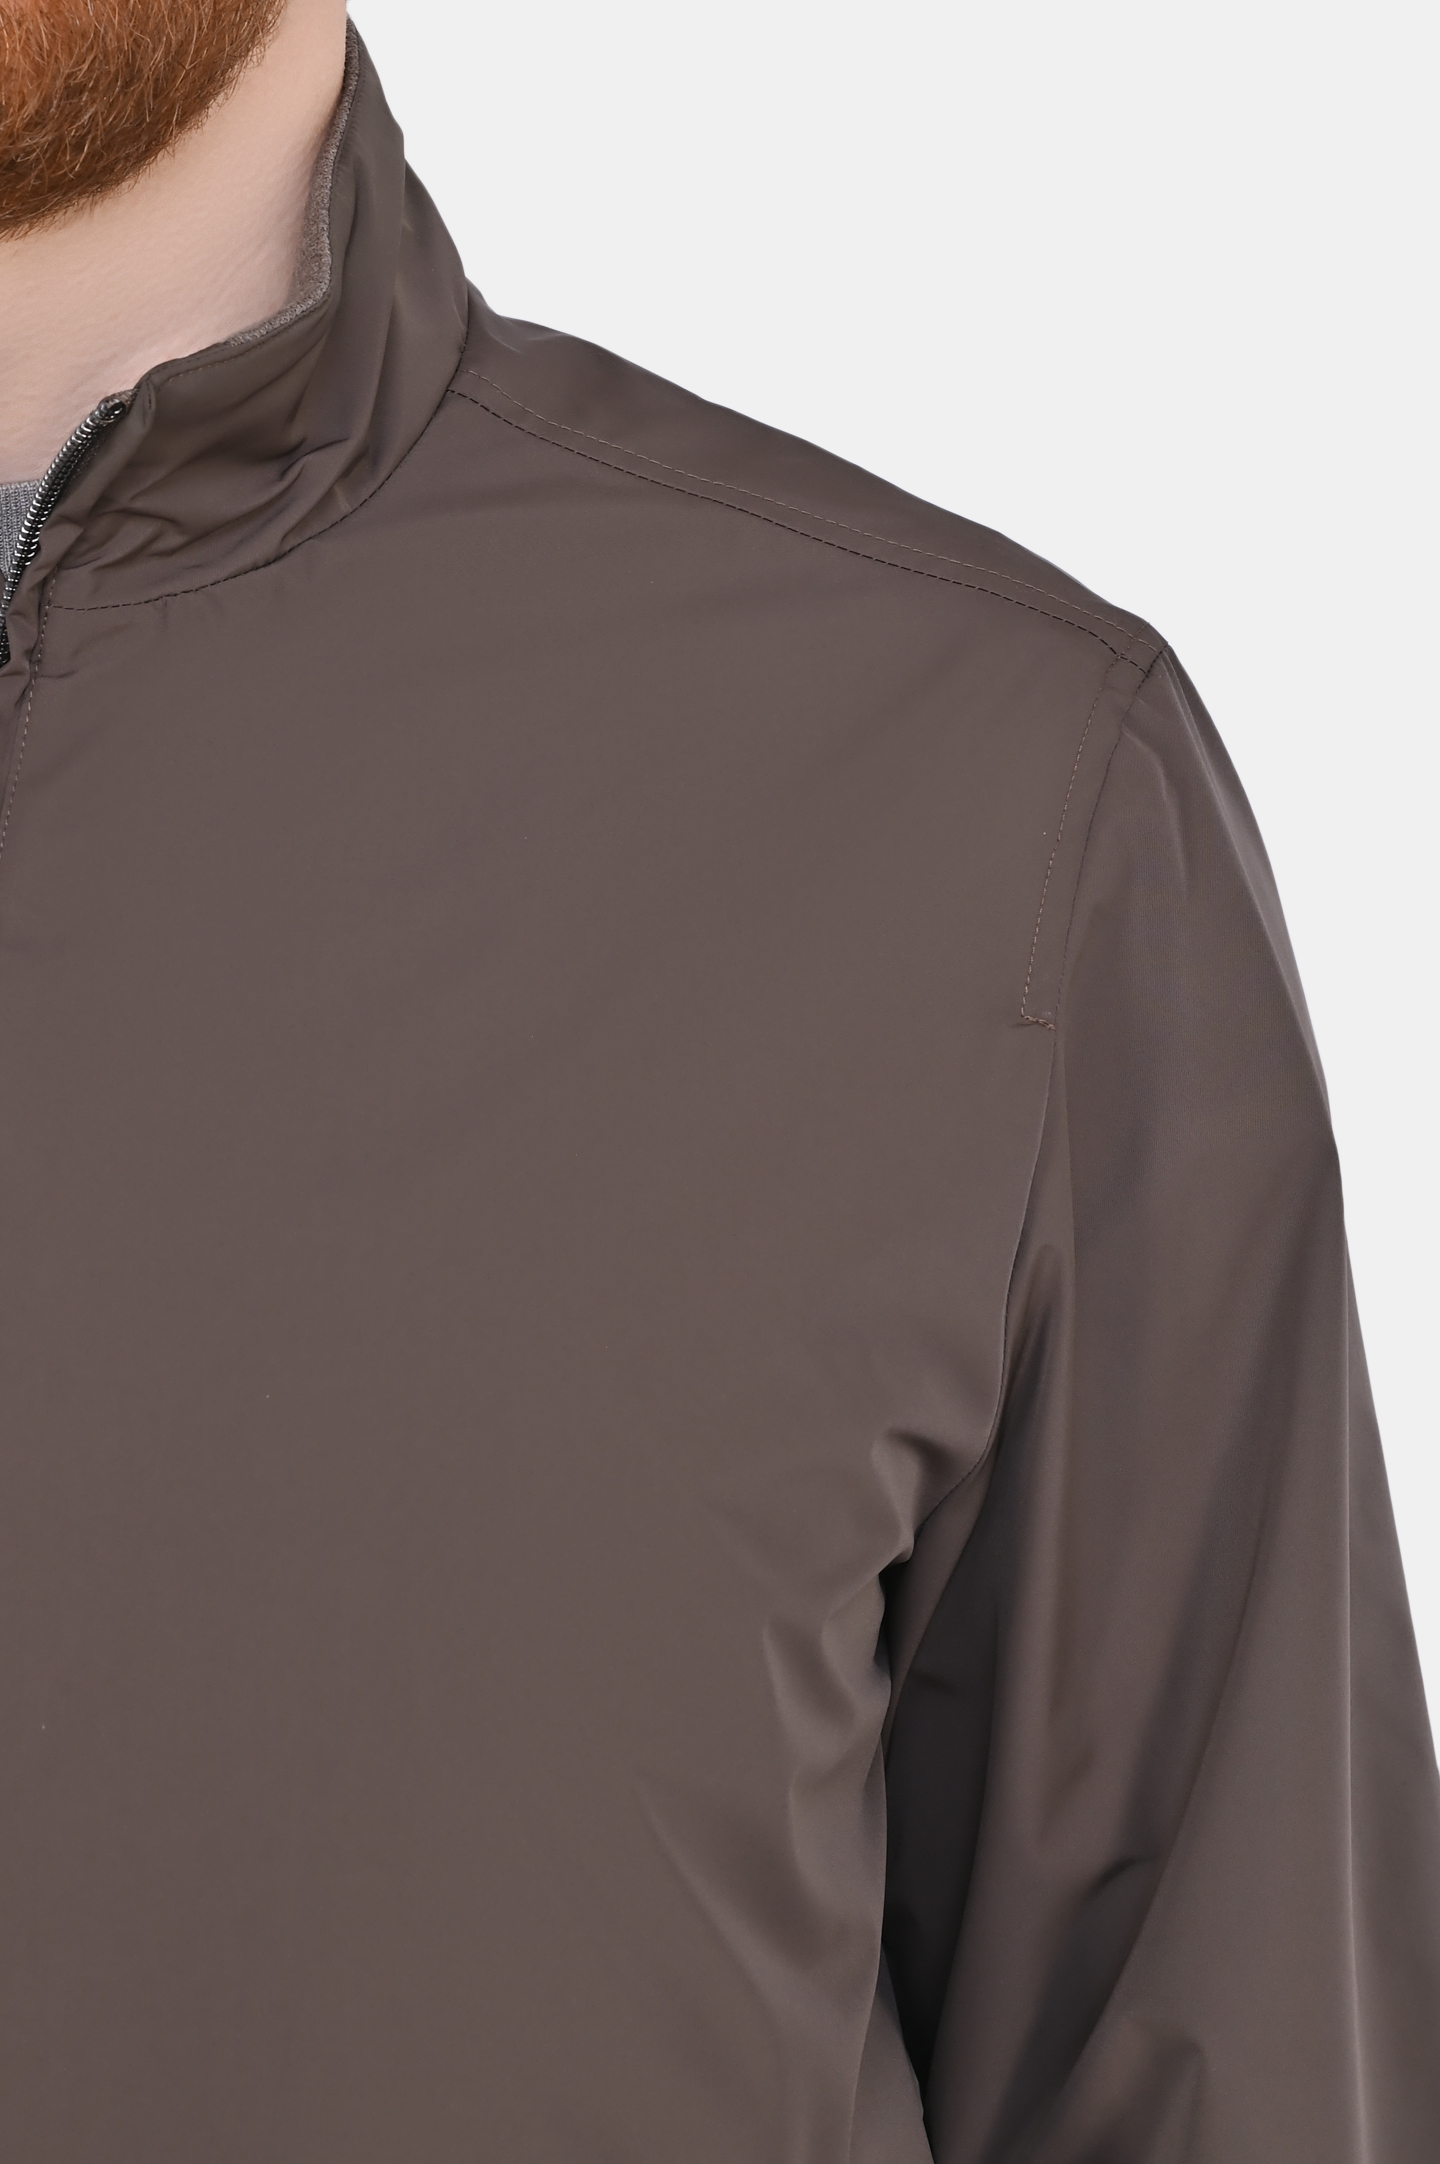 Куртка CANALI SG02321 O40806, цвет: Коричневый, Мужской